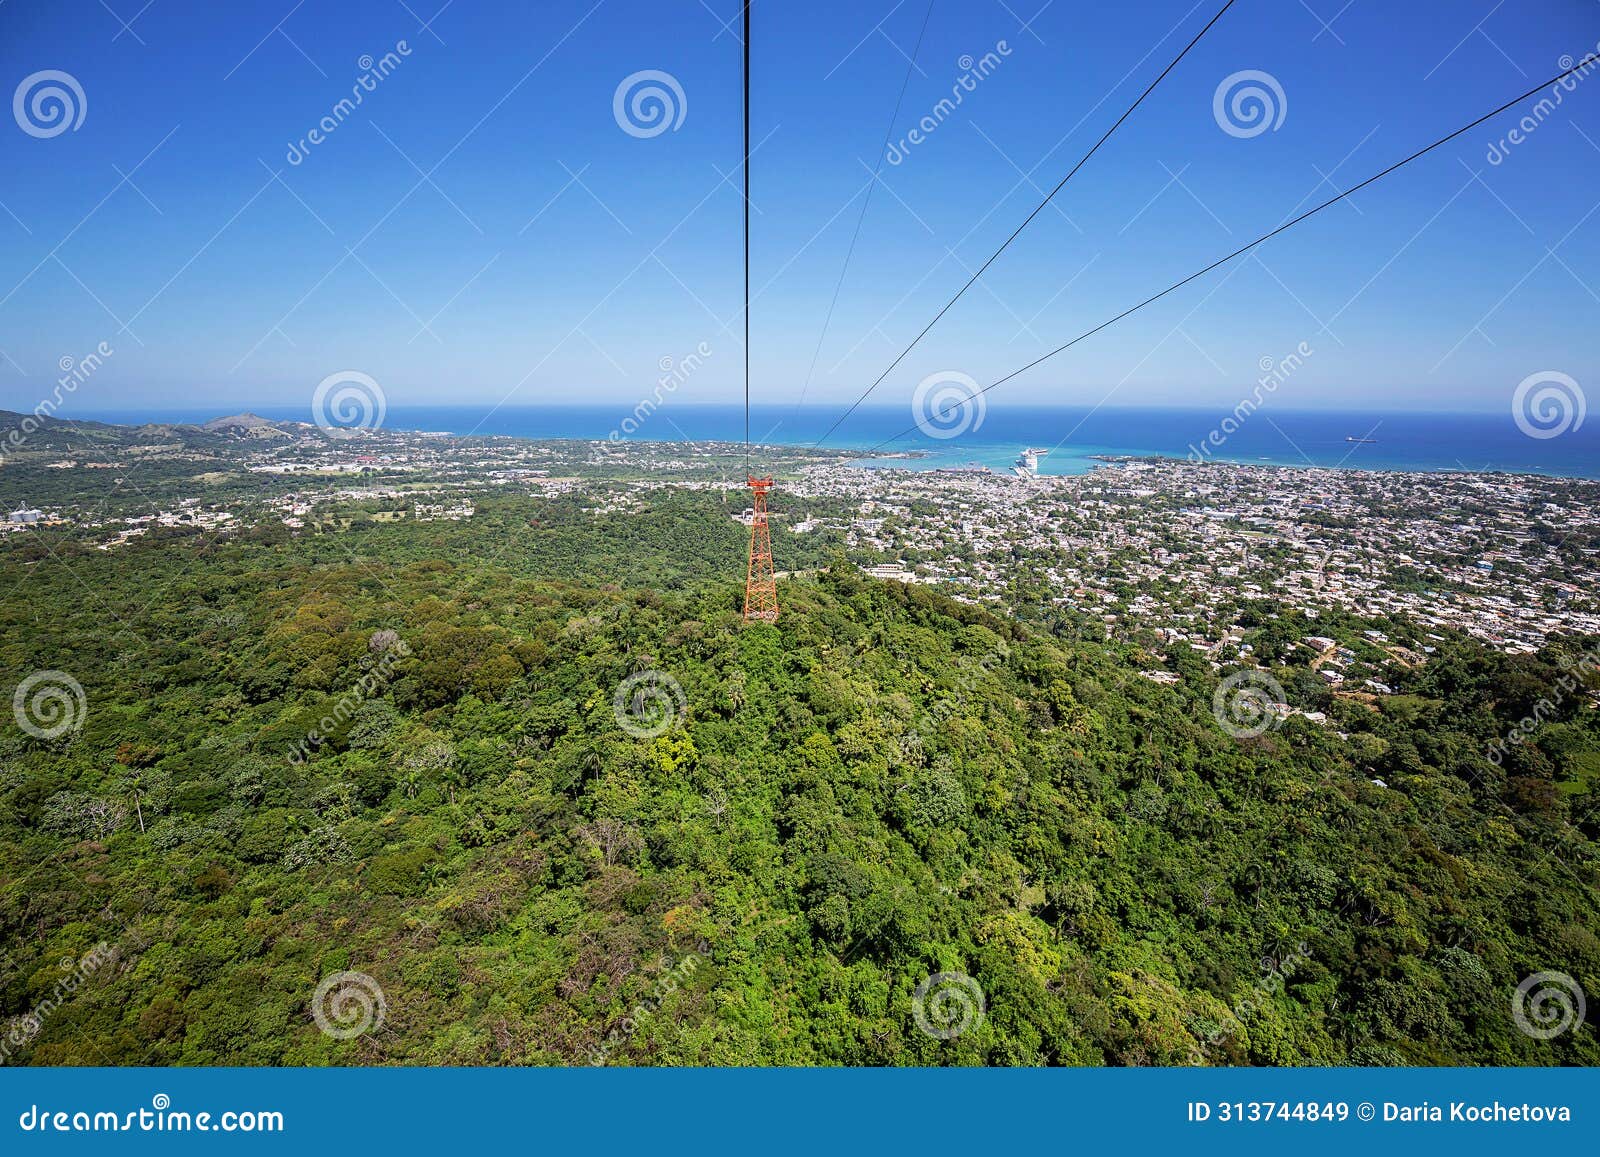 teleferico in puerto plata, dominican republic